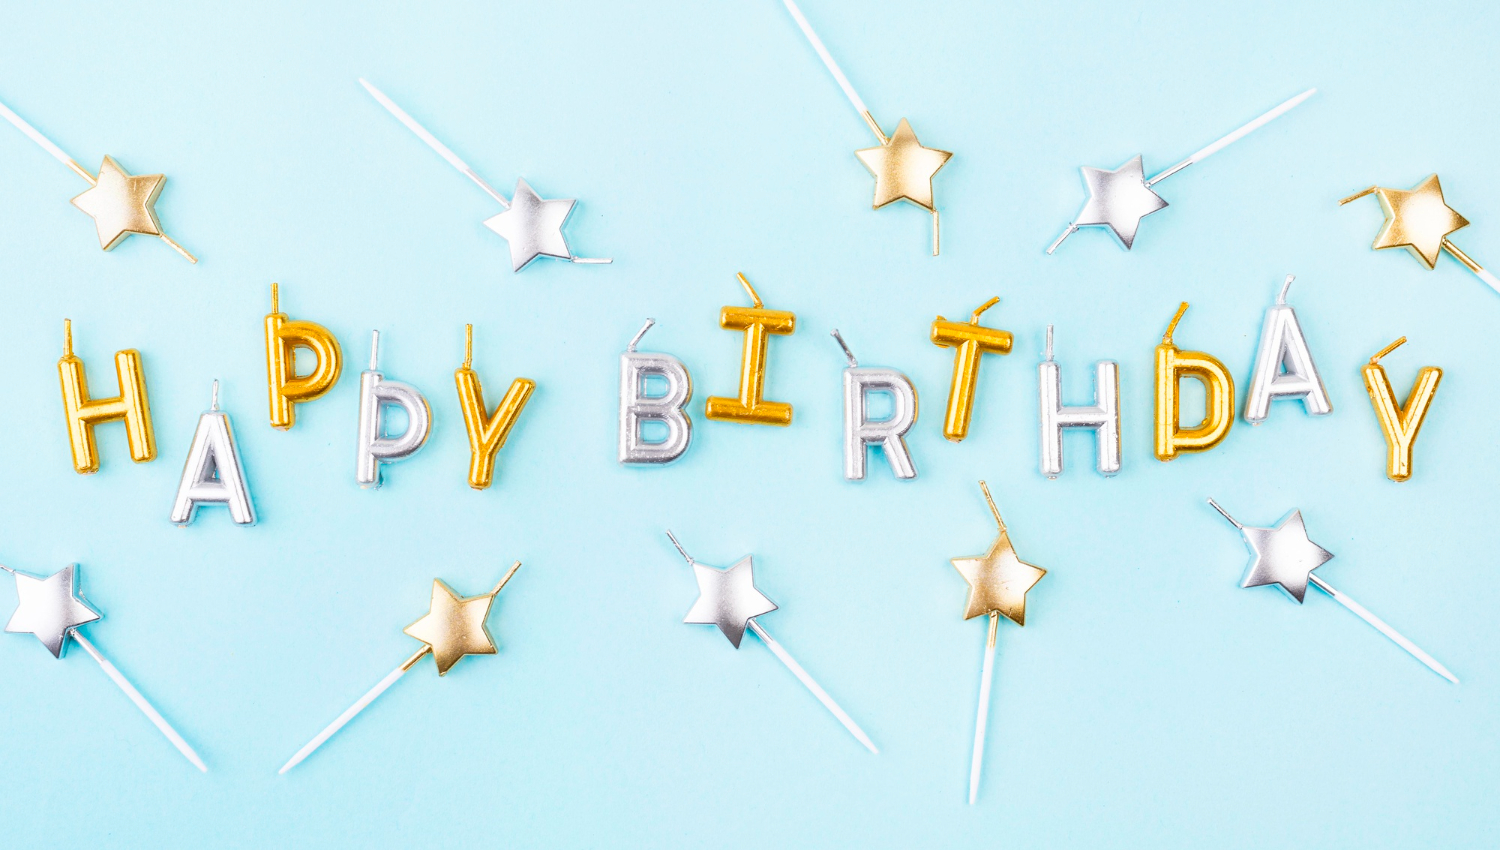 Creative Ways to Say Happy Birthday